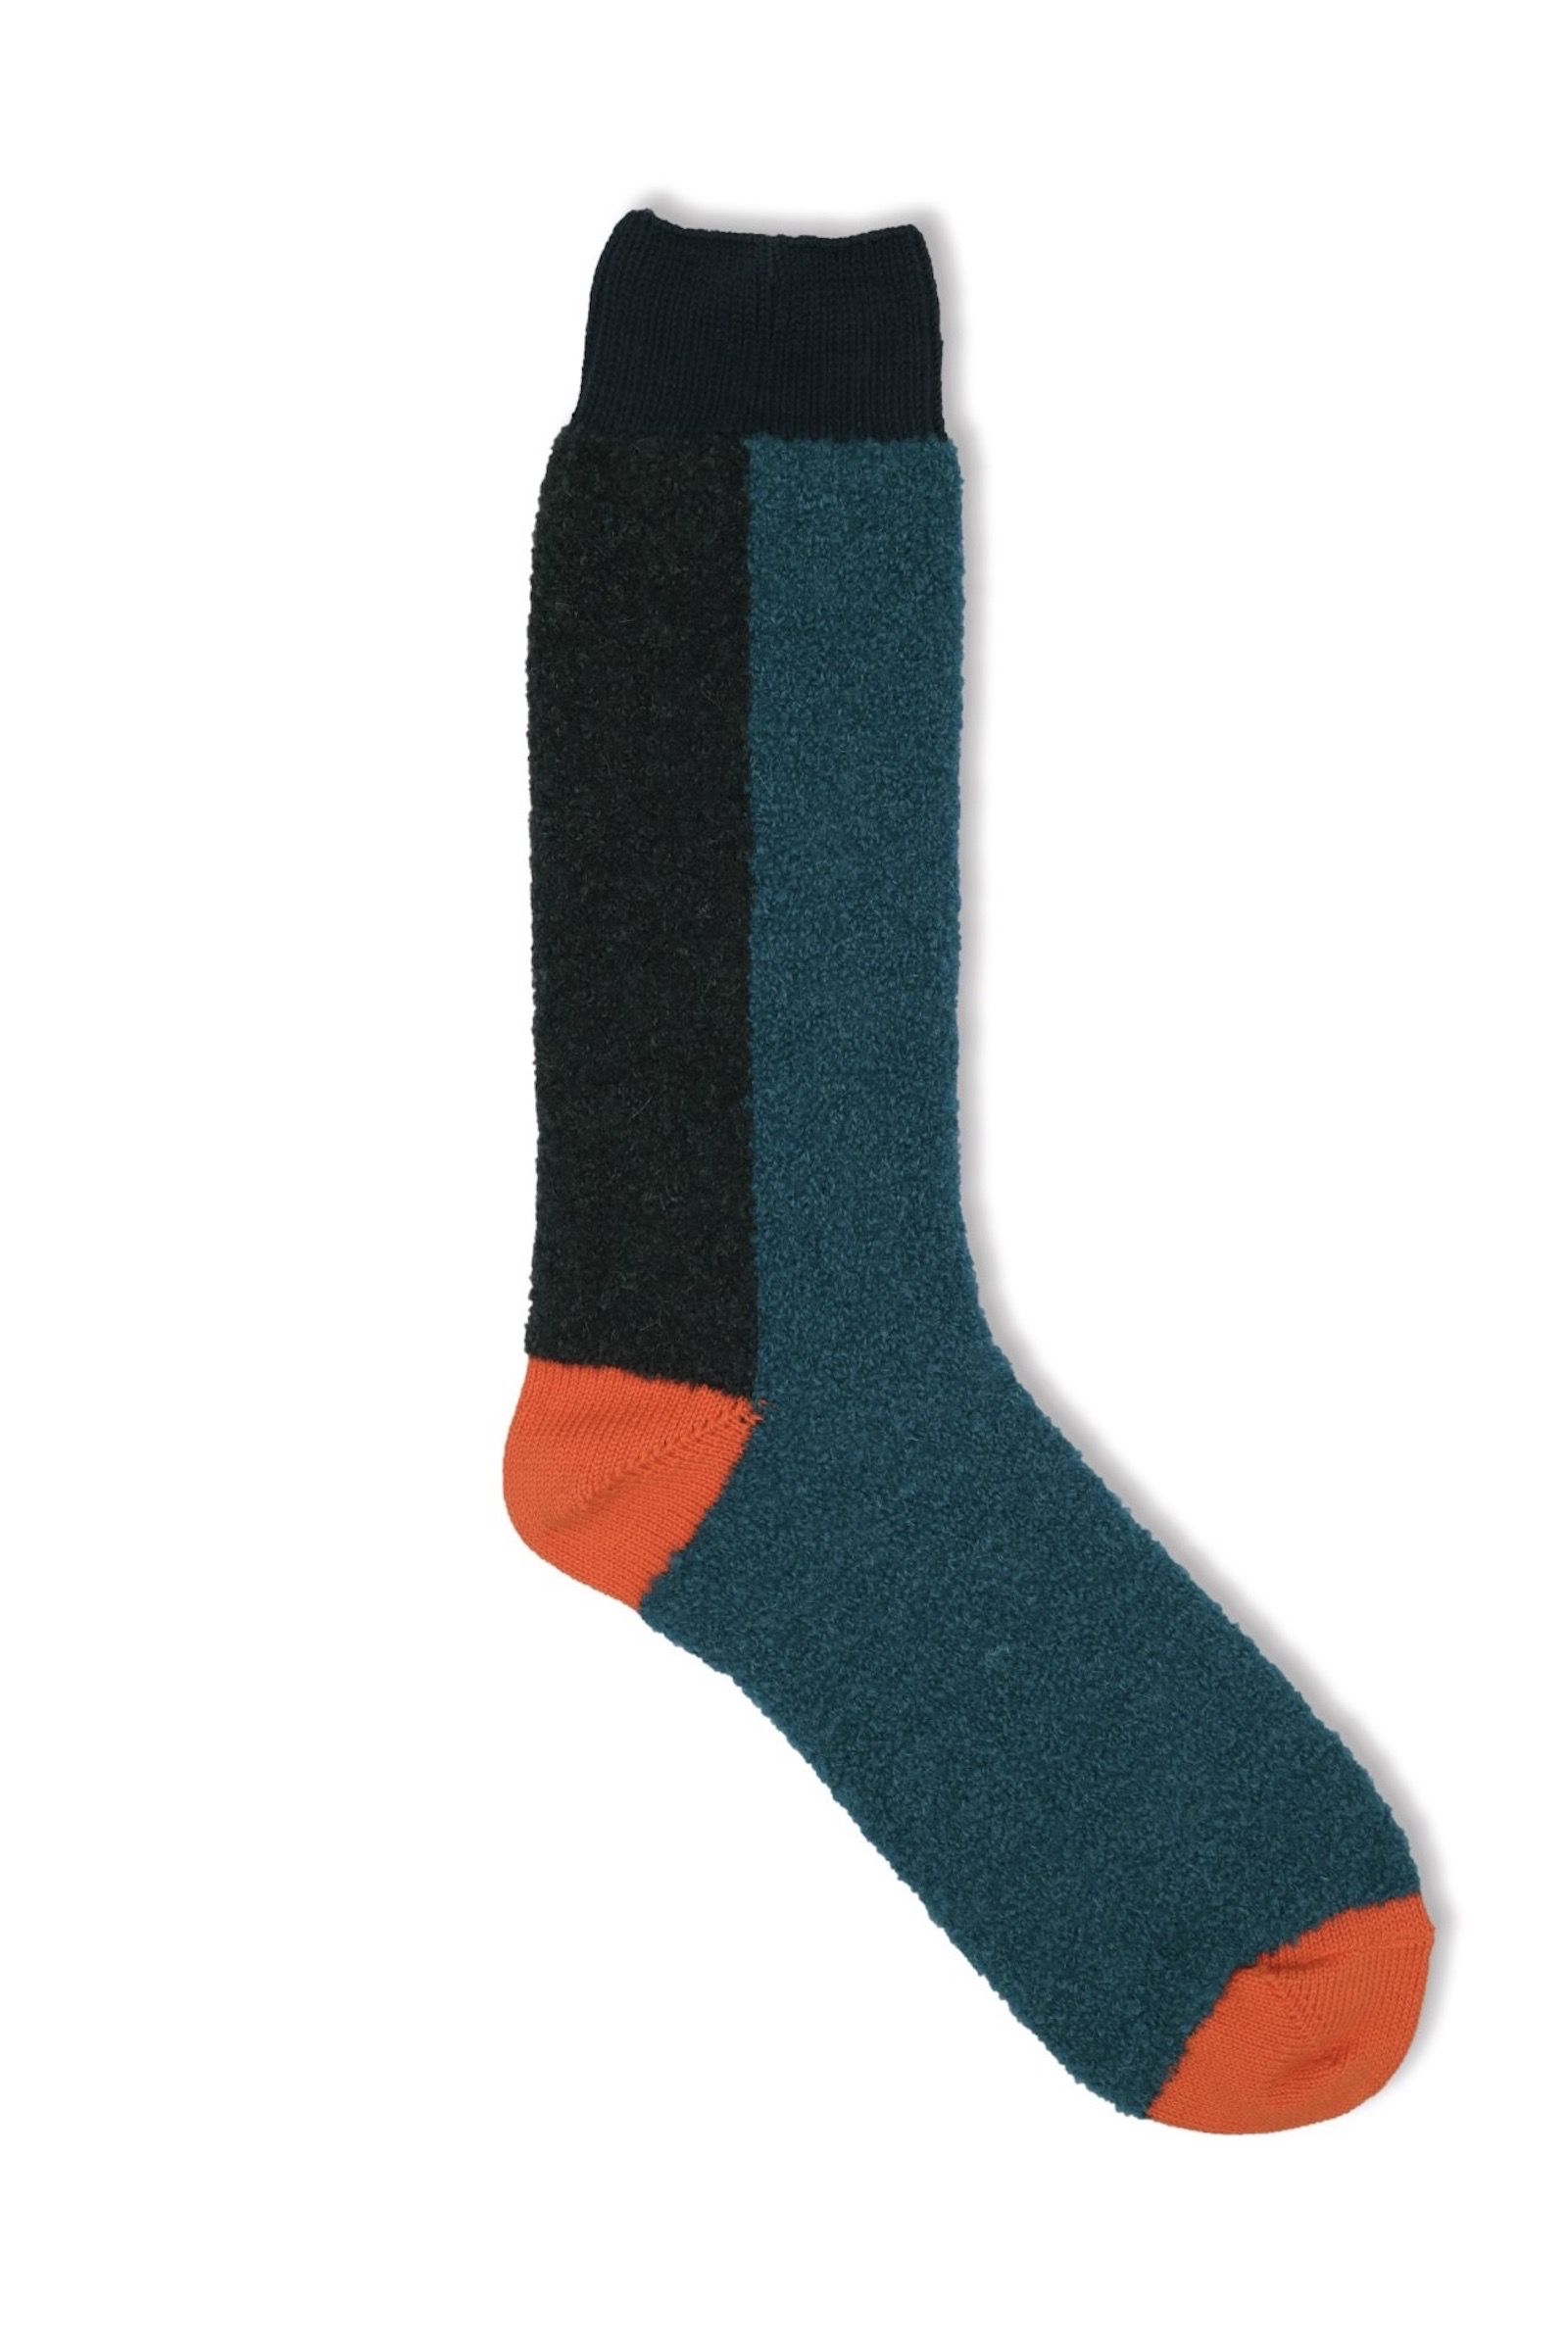 decka quality socks - × bru na boinne alpaca boucle socks 21aw men